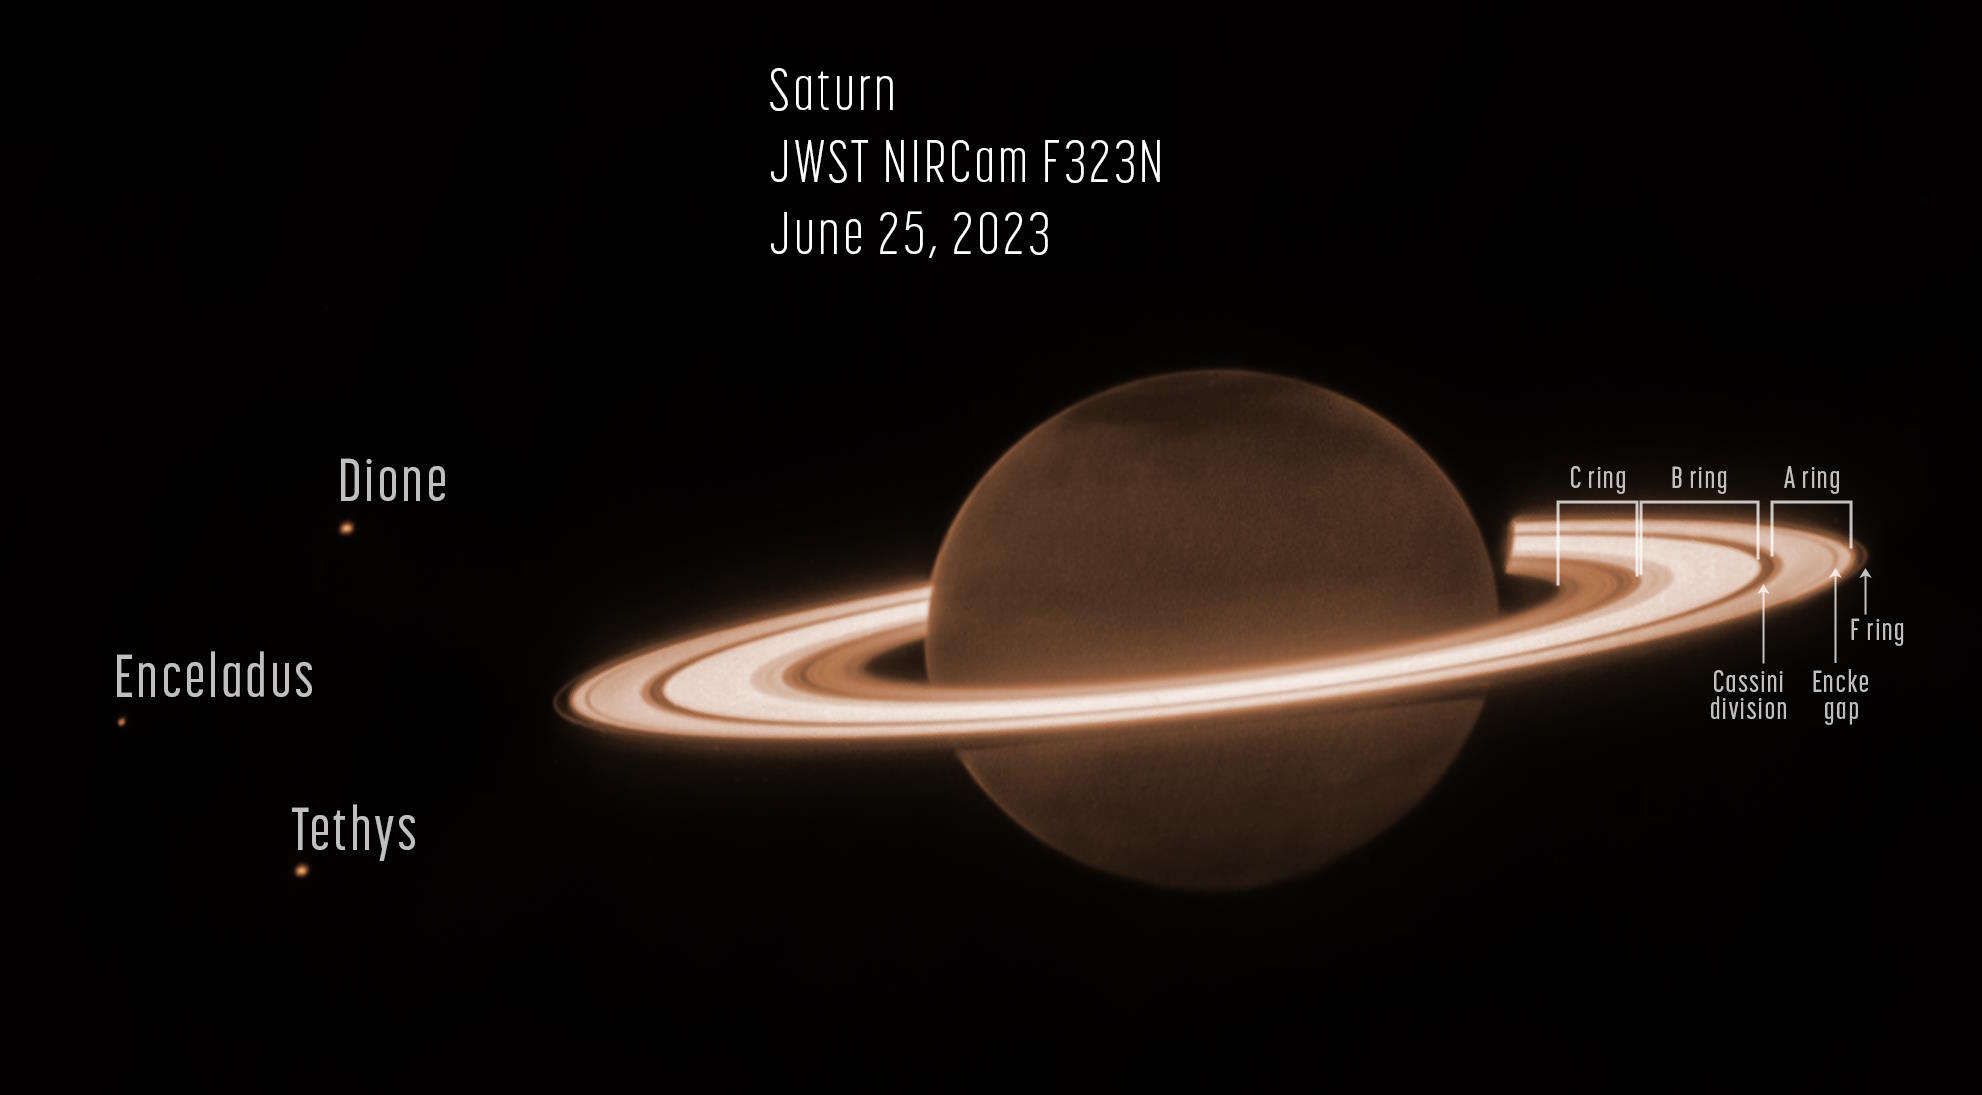 Saturn JWST annotated